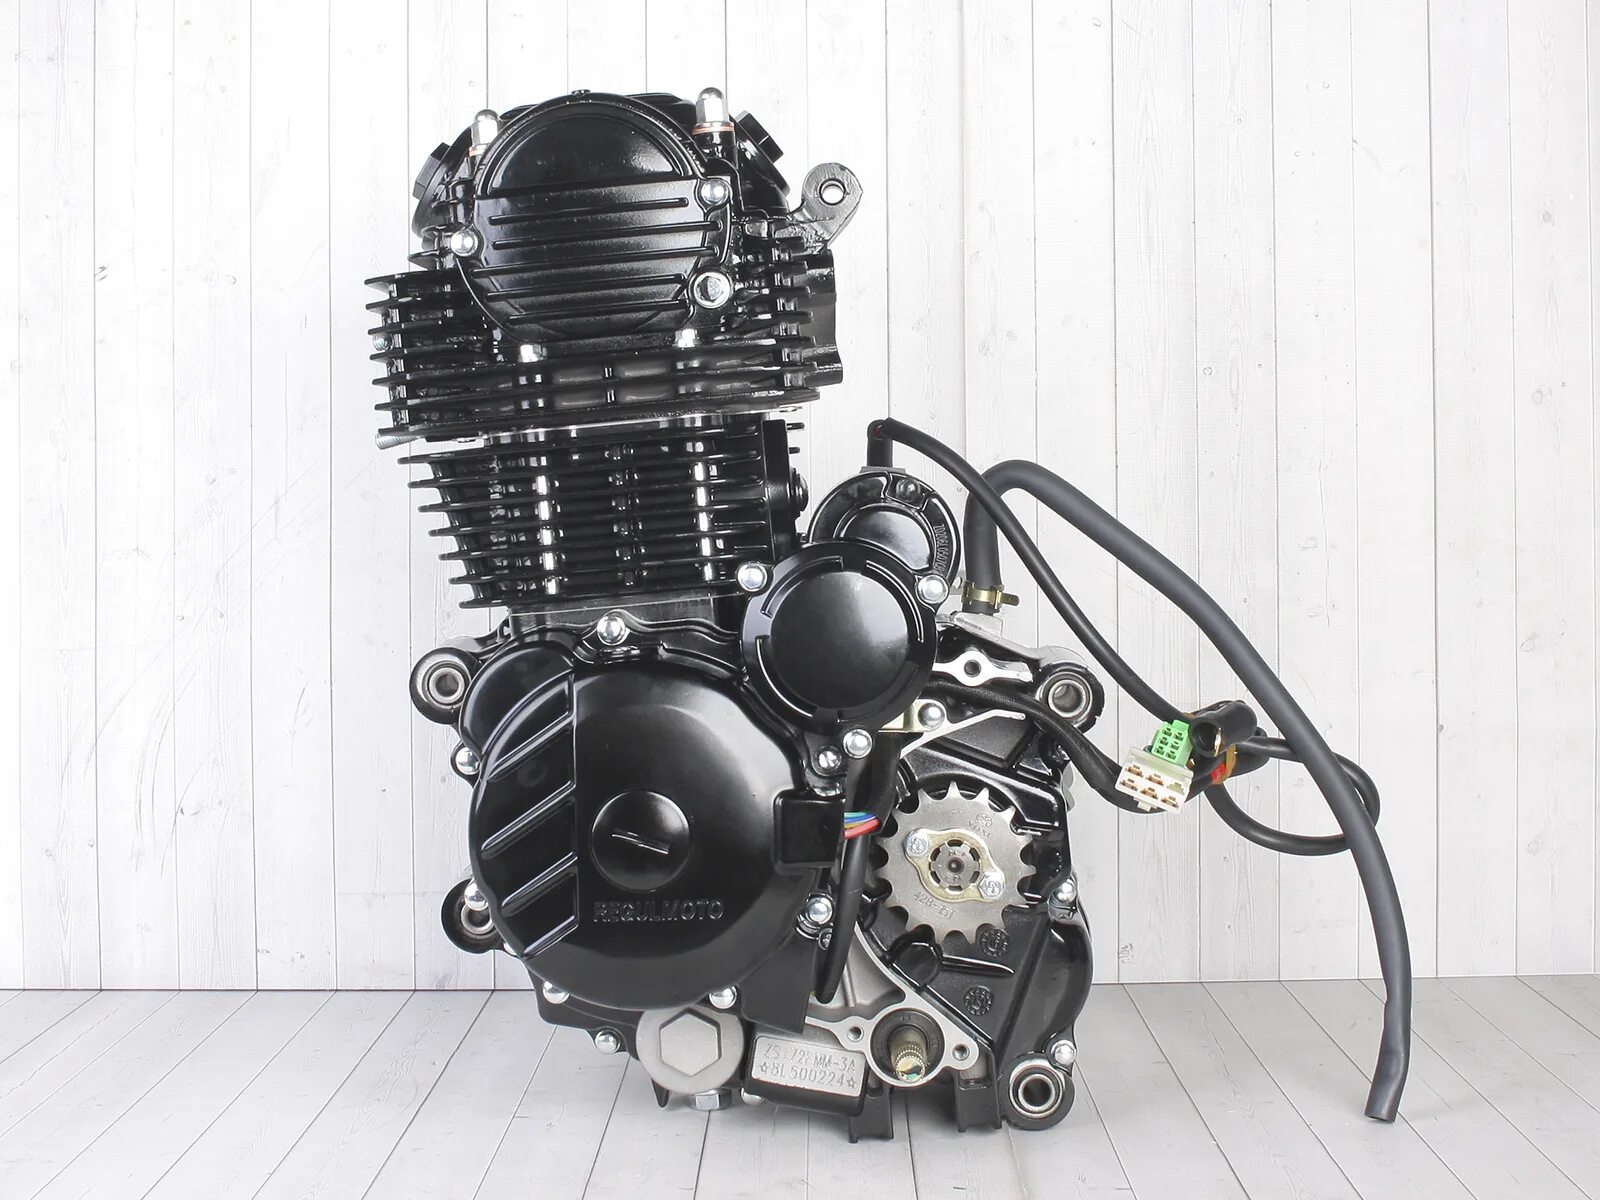 Zs172fmm-3a. 172fmm-3a. Двигатель в сборе ZS 172fmm (cb250-f) 249см3. Мотор 172 FMM 300 кубов. Купить 172 мотор